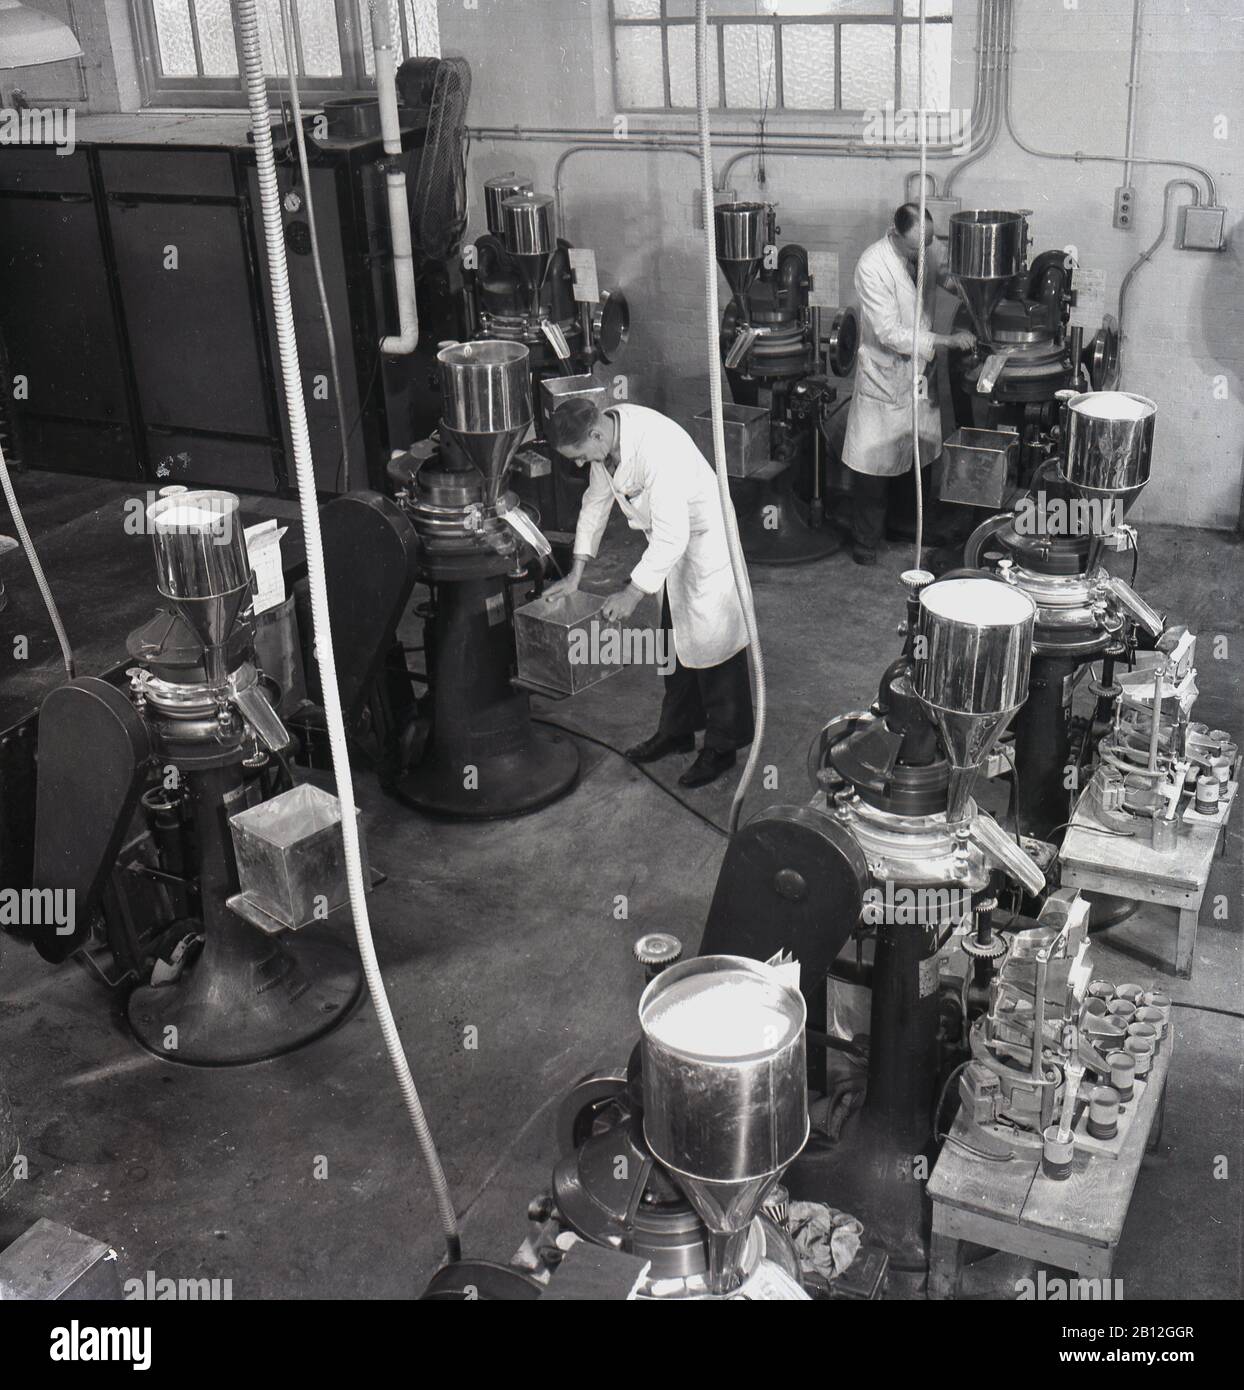 1950er Jahre, historische, weiß gestrichene männliche Arbeiter bei den Medizinprodukteherstellern von Arthur Cox & Sons in Brighton, England, Großbritannien, stehend an medizinischen Tabletten oder Pillenmaschinen der Ära. Stockfoto